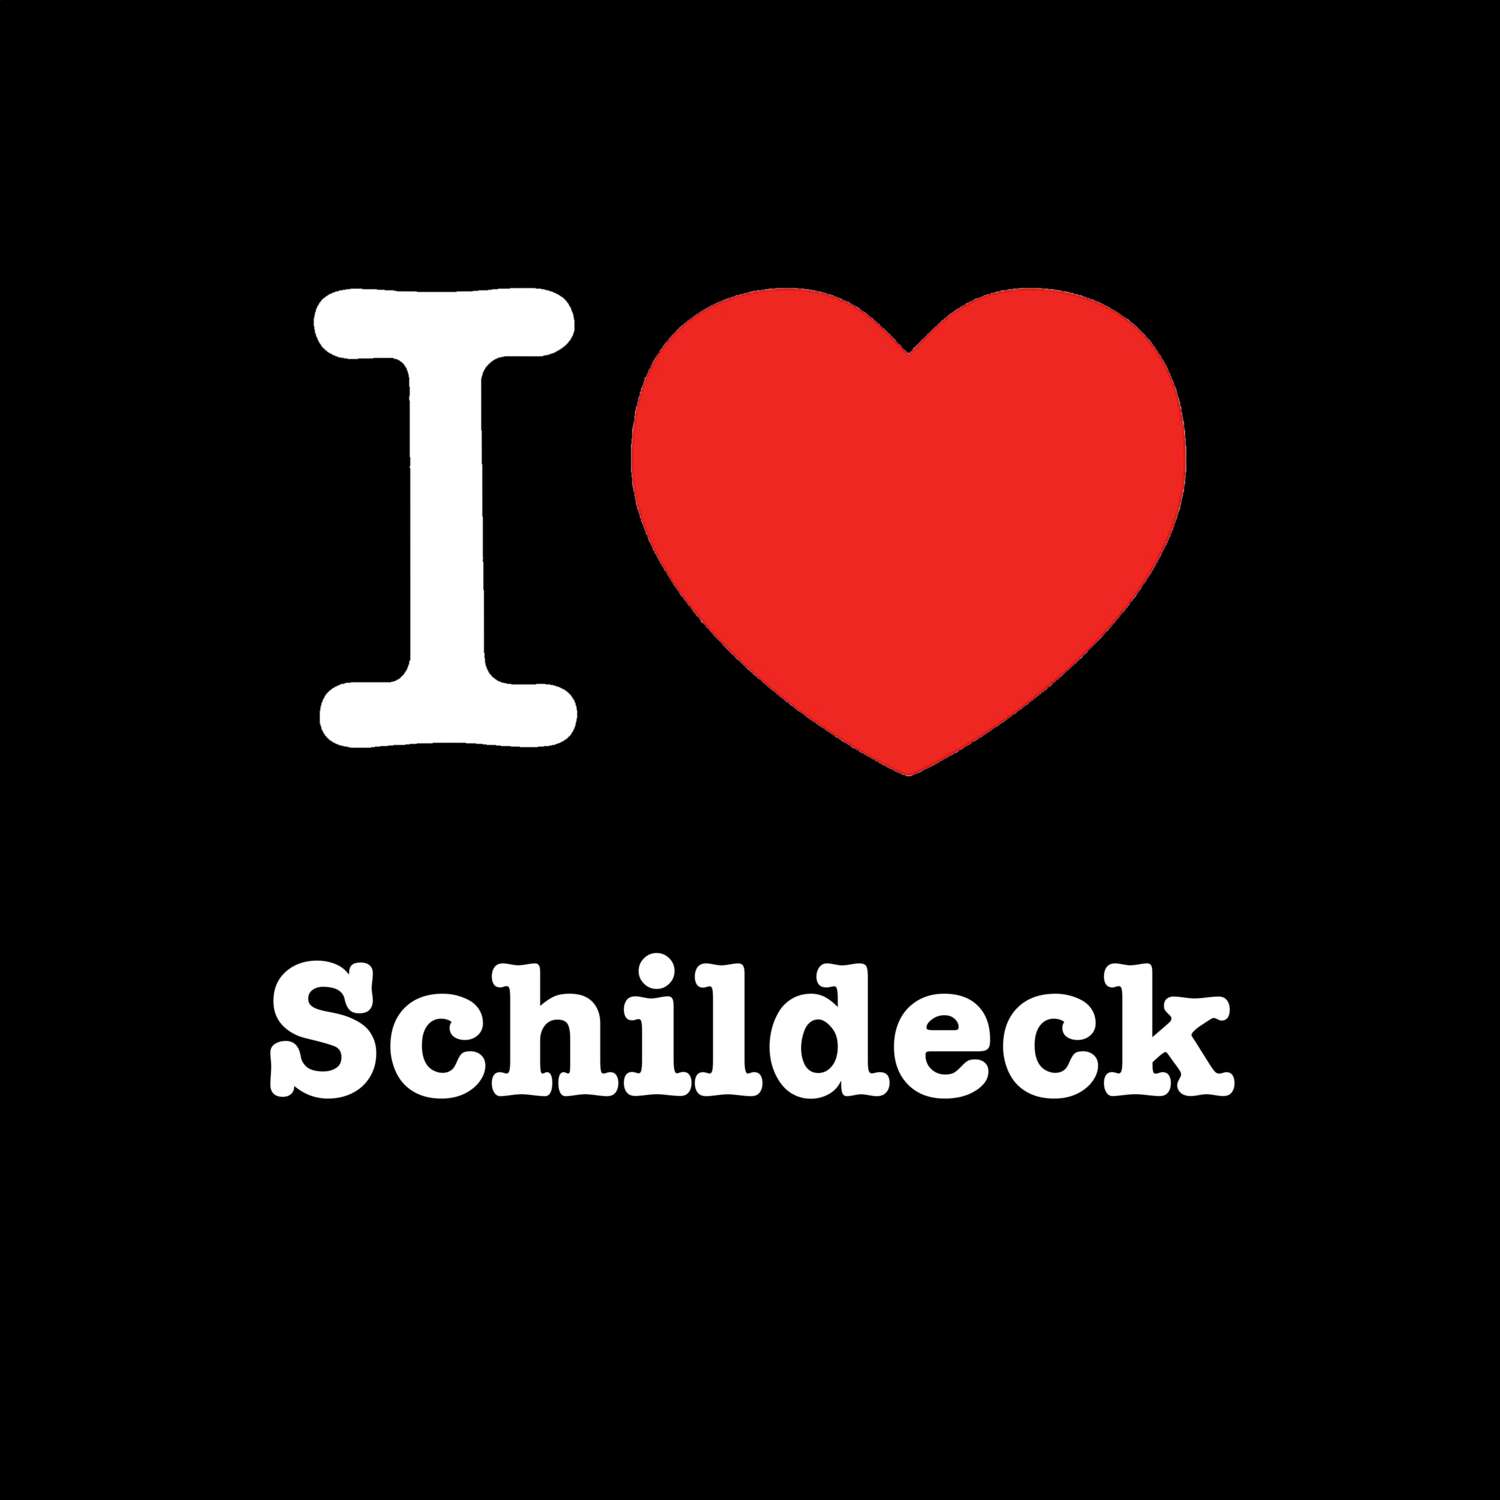 Schildeck T-Shirt »I love«